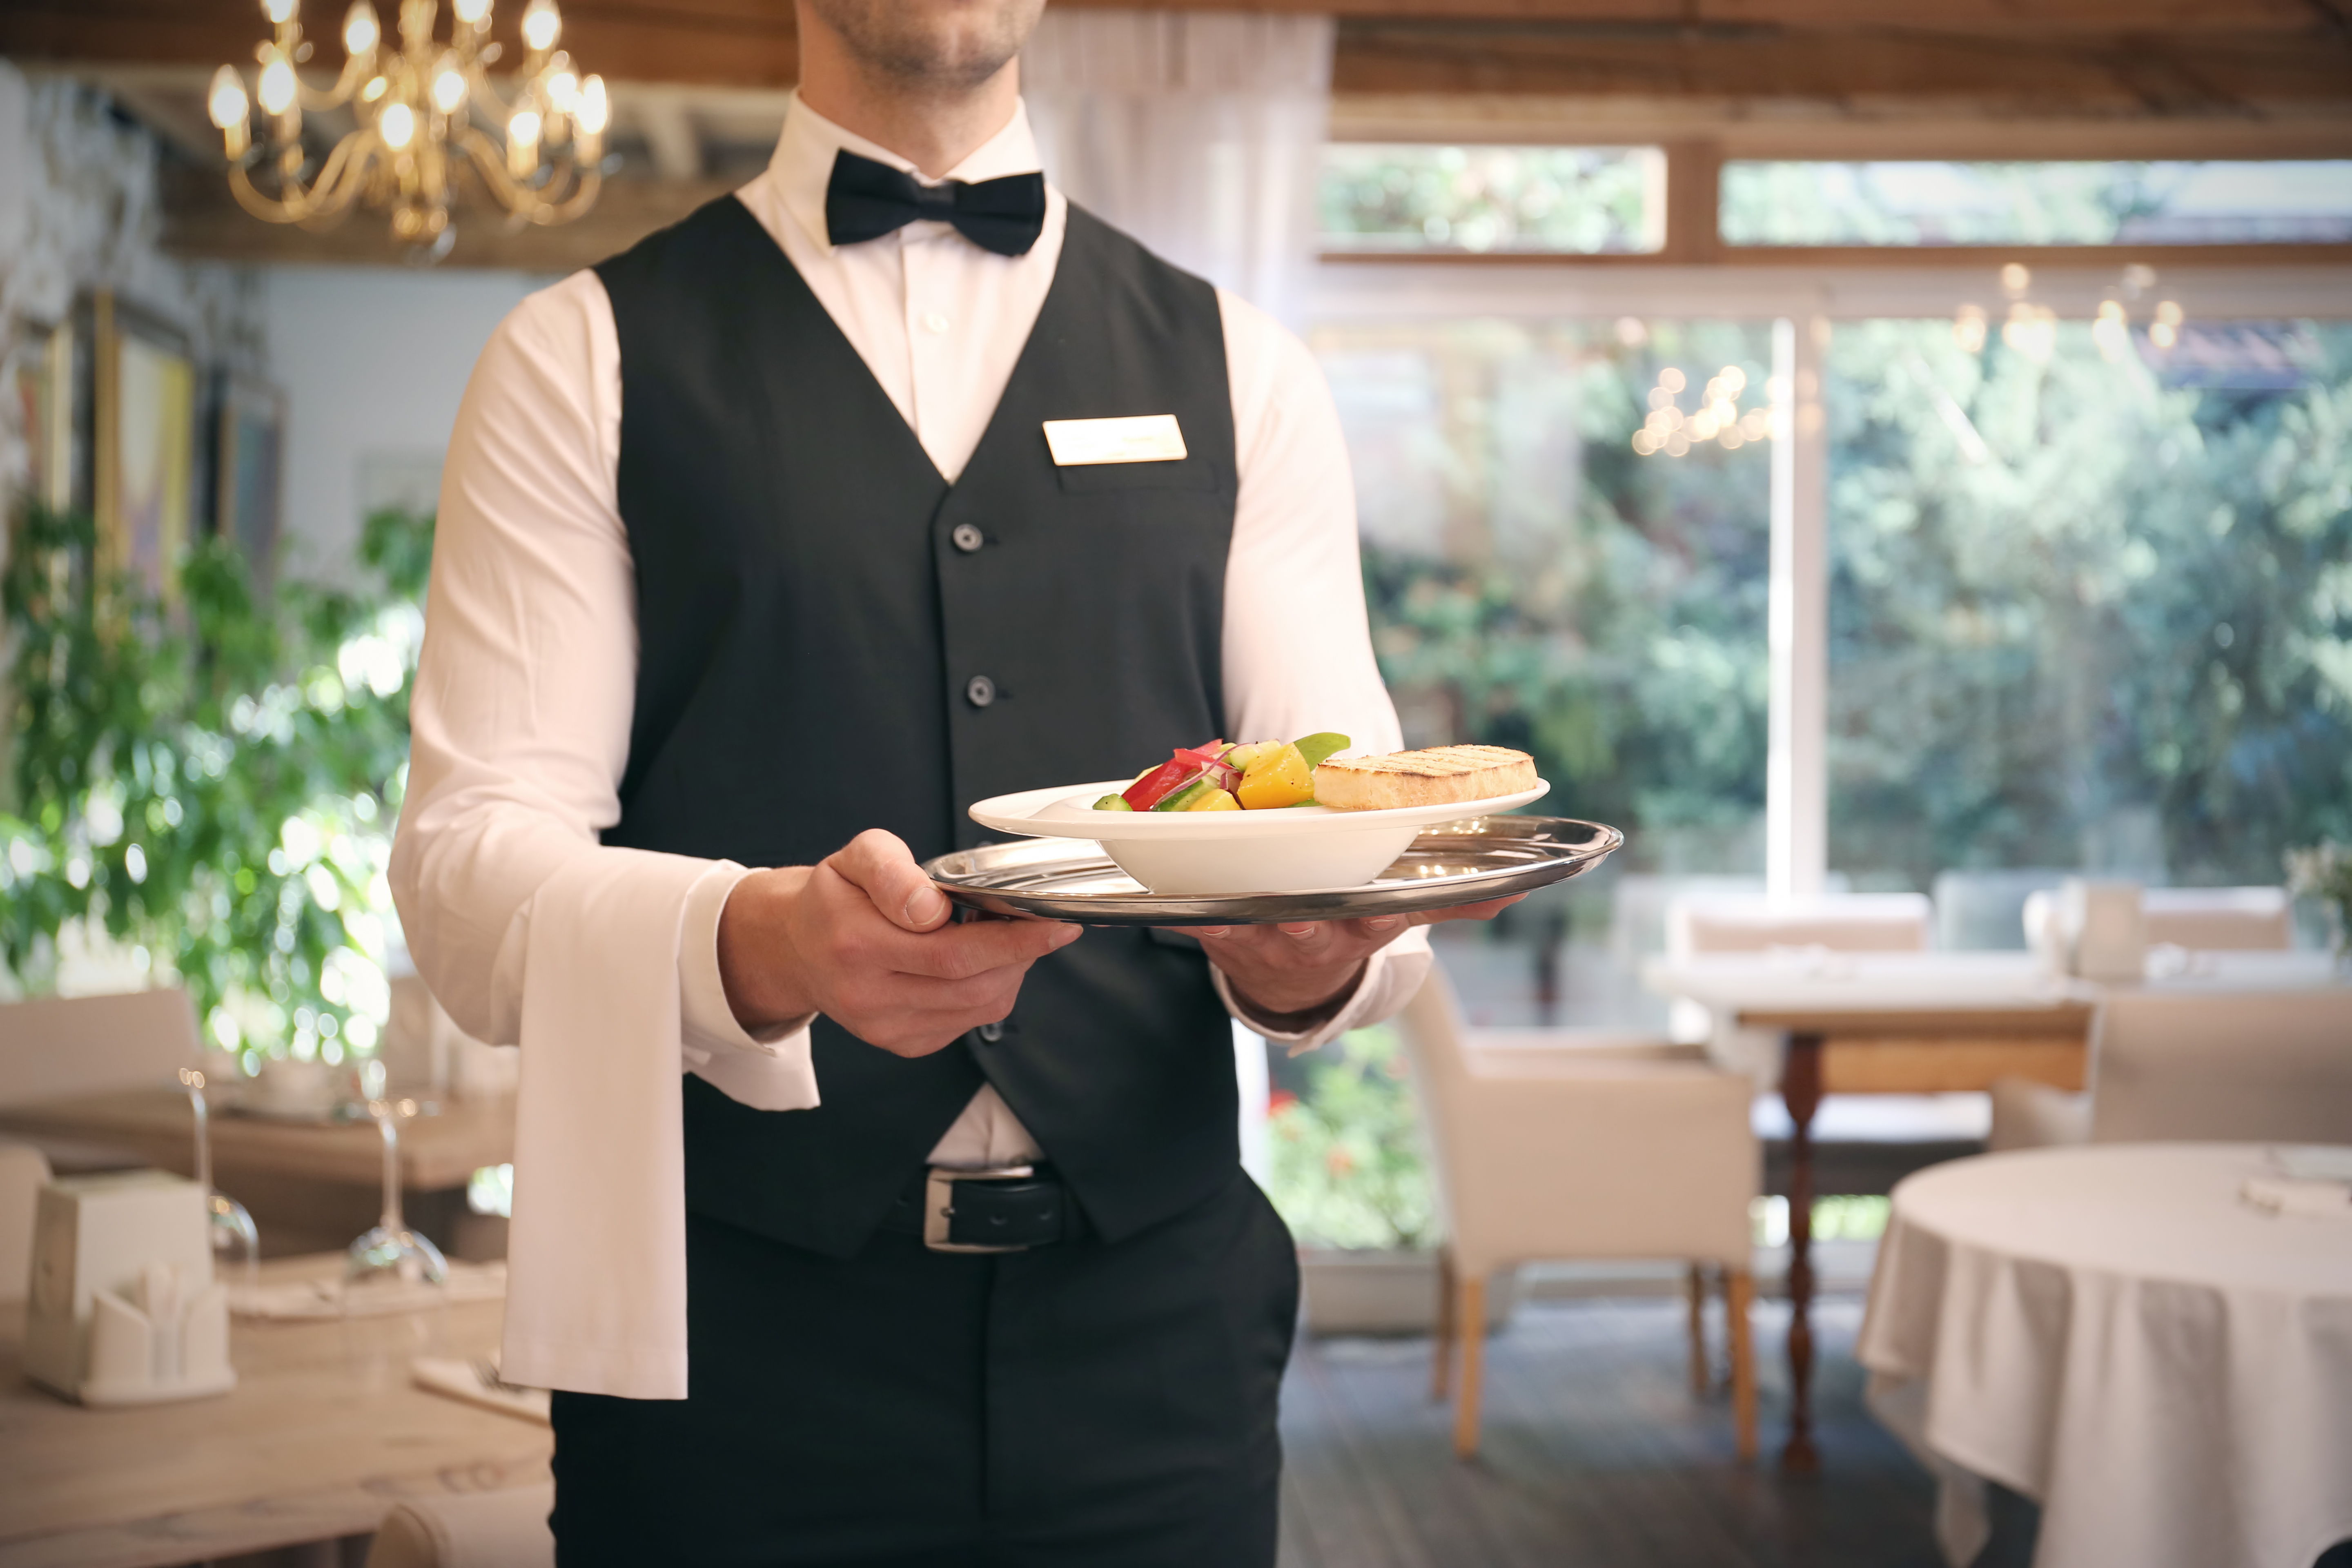 Ein Kellner serviert das Essen im Restaurant | Quelle: Shutterstock